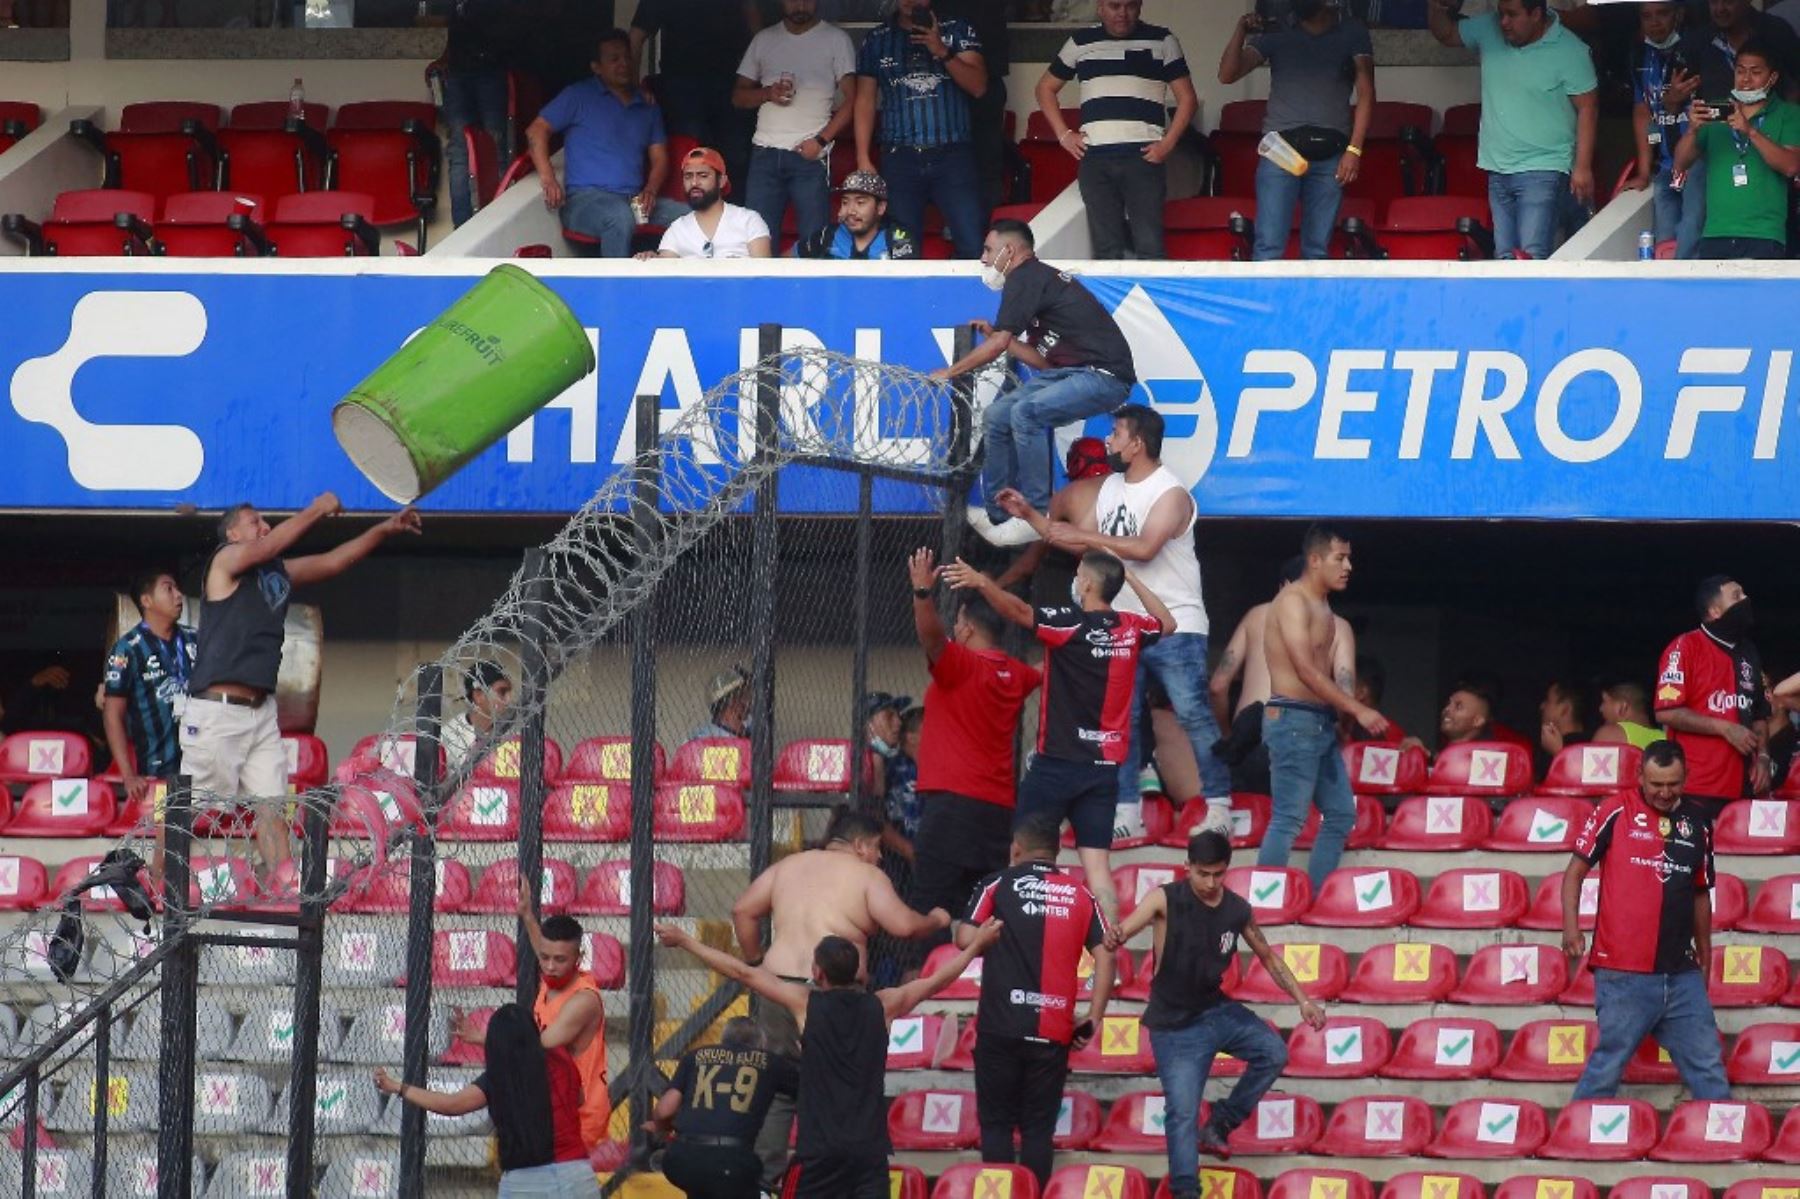 Hinchas protagonizaron violentos actos durante el partido entre el Querétaro y el Atlas por la novena jornada del torneo Clausura 2022 dl fútbol mexicano.